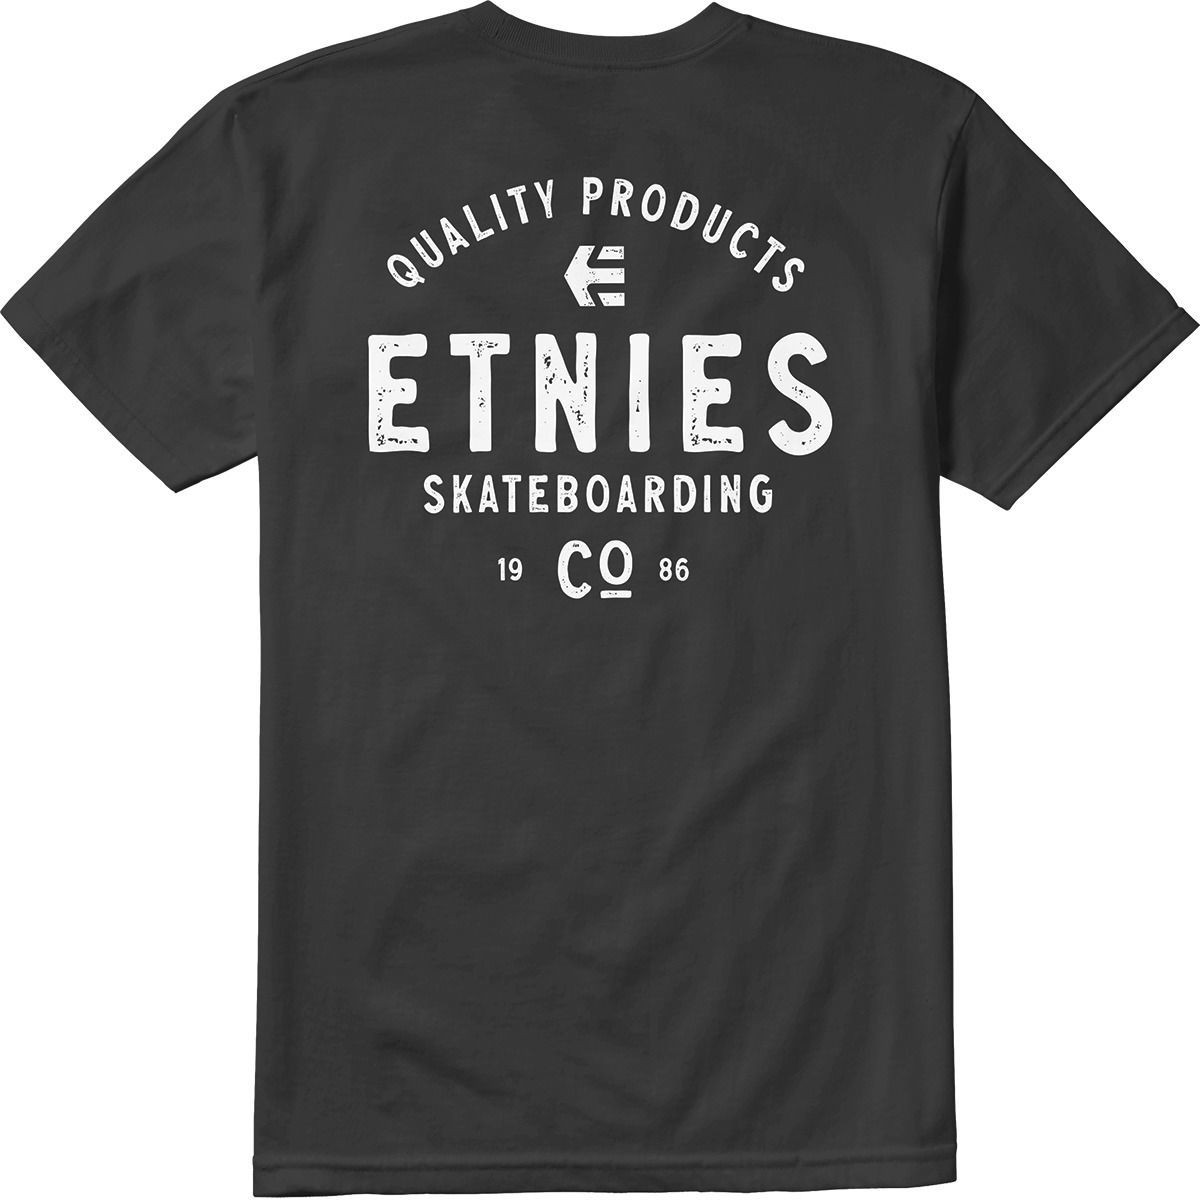 Etnies Skate Co Black White Tişört